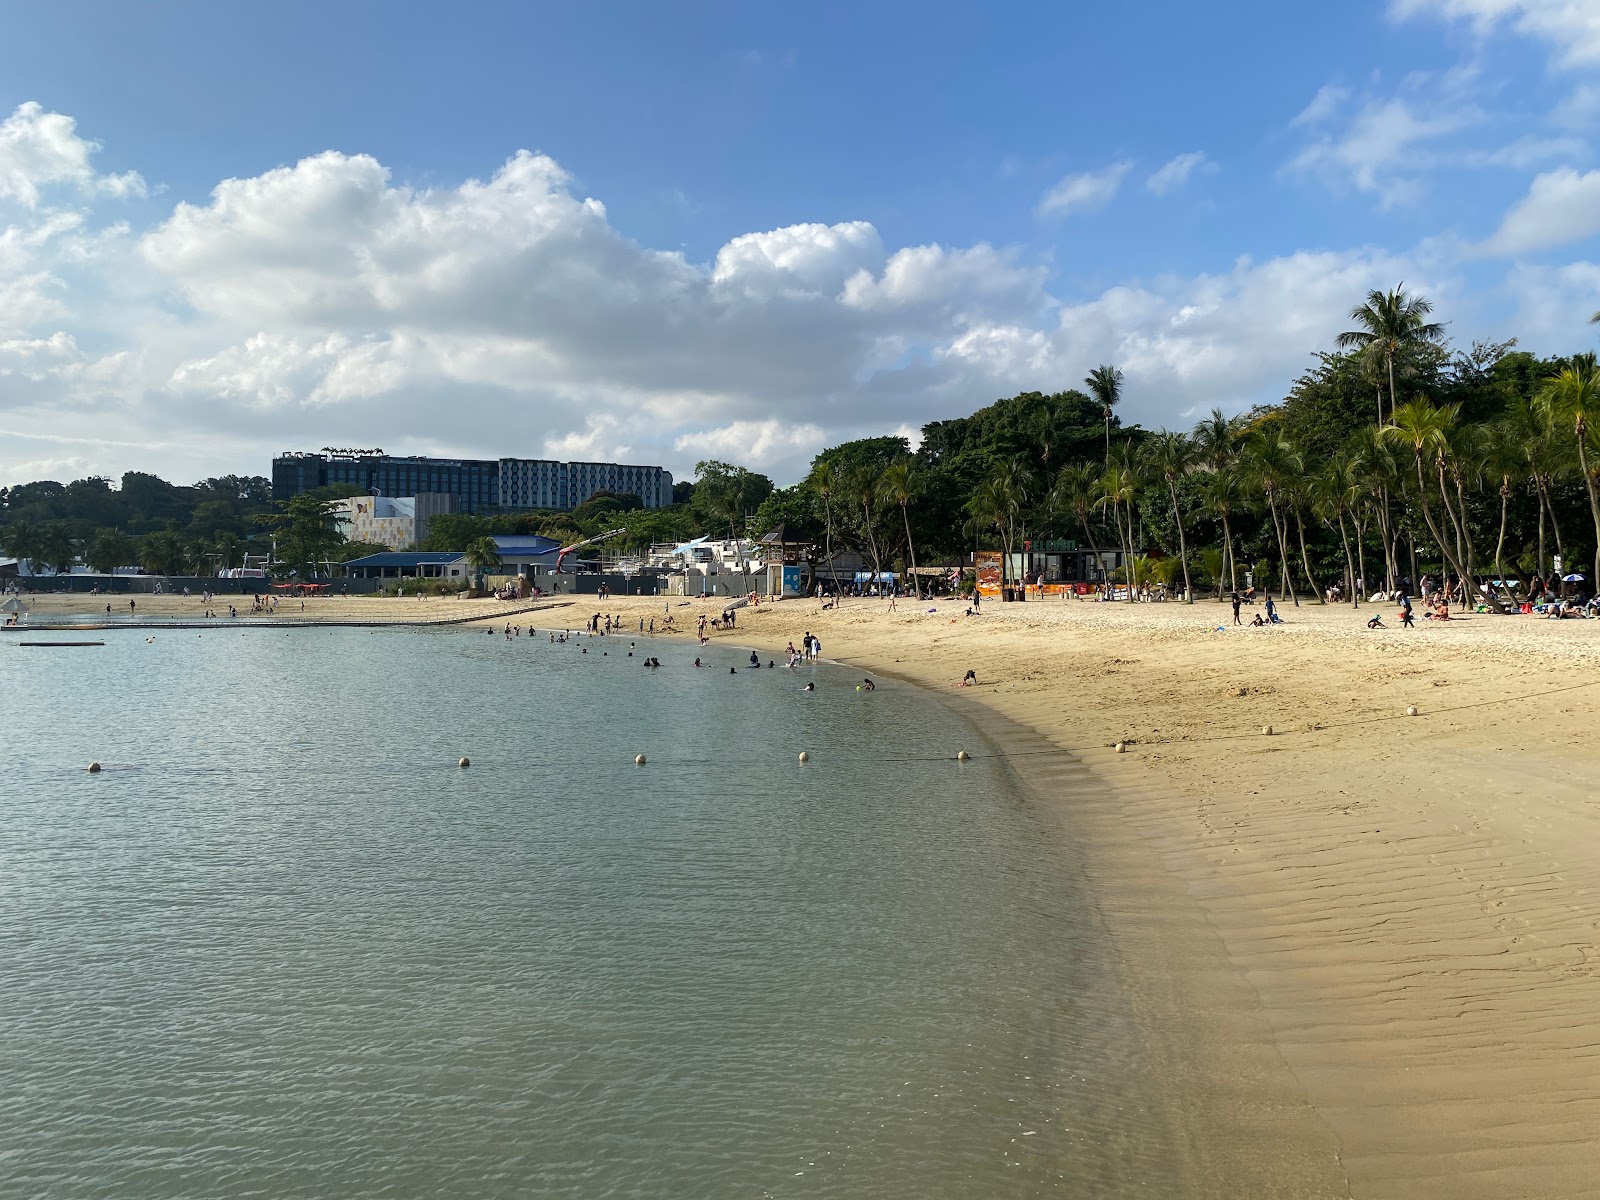 Foto af Palawan Beach - populært sted blandt afslapningskendere